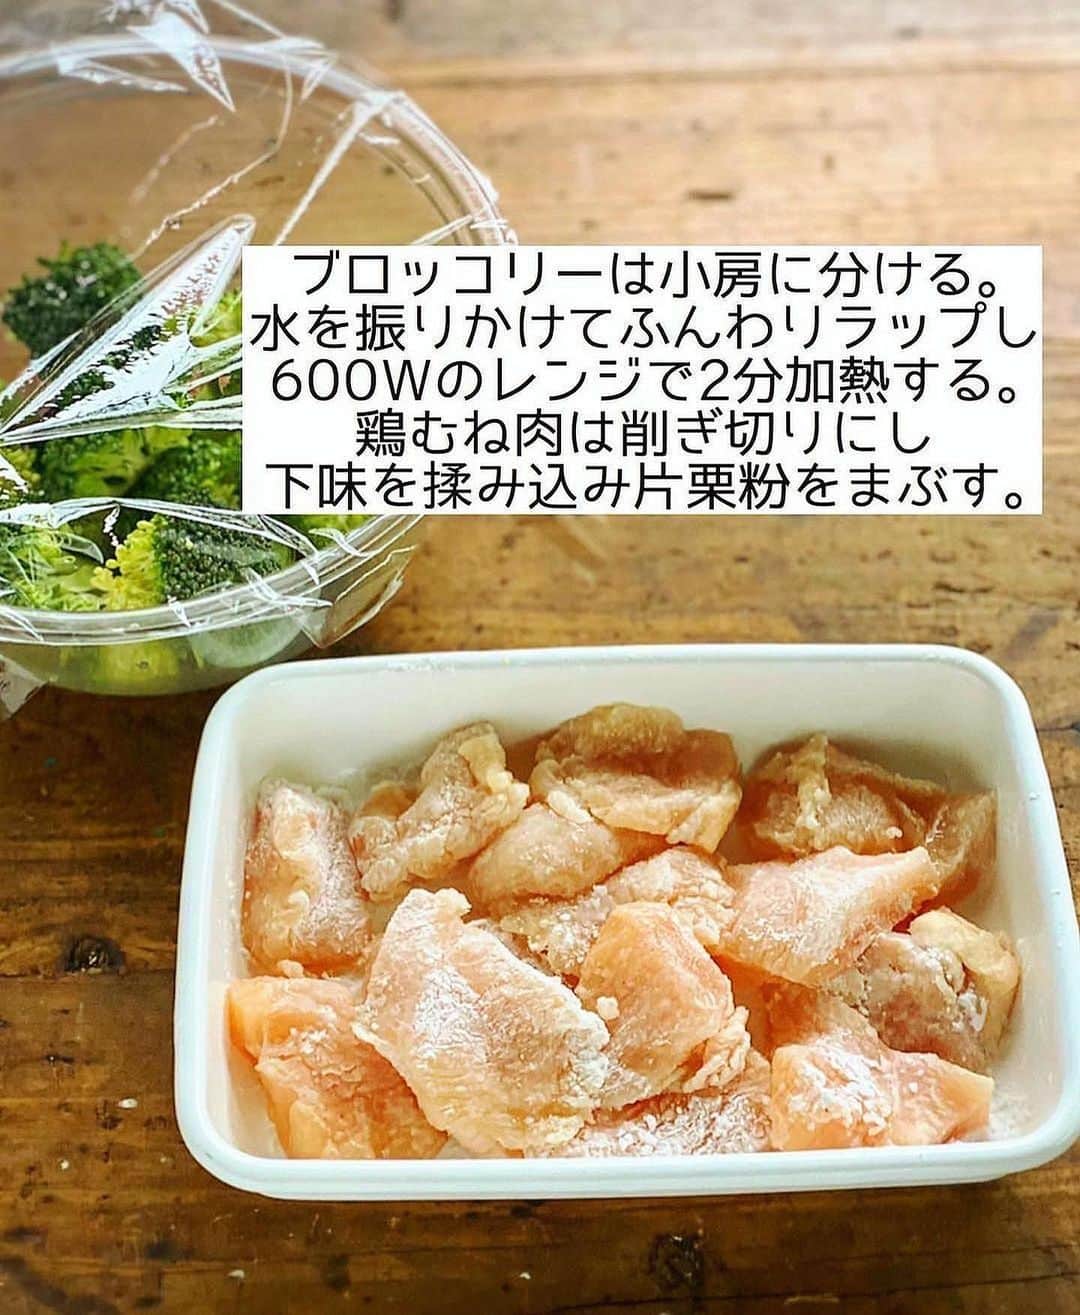 Mizuki【料理ブロガー・簡単レシピ】さんのインスタグラム写真 - (Mizuki【料理ブロガー・簡単レシピ】Instagram)「・鶏むね肉のコスパおかず💕 ⁡ ［#レシピ ］ ーーーーーーーーーーーーーーーーーーーーー 鶏むね肉とブロッコリーのオーロラソース和え ーーーーーーーーーーーーーーーーーーーーー ⁡ ⁡ ⁡ おはようございます☺️ ⁡ 今日ご紹介させていただくのは 鶏むね肉のコスパおかず❣️ \ オーロラソース和え /  (再掲載✨) ⁡ 淡白な鶏むね肉に まったり甘めのソースが相性抜群💕 パサつきなしでしっとり仕上がる おすすめのレシピです🙌 ⁡ 今回はブロッコリーもプラスして バランスよく仕上げましたよ〜♩ とっても簡単にできるので よかったらお試し下さいね😋 ⁡ 💬 昨日は宇宙な話しにお付き合いいただいて ありがとうございました😂 ⁡ 【簡単・時短・節約レシピ更新中🔻】 @mizuki_31cafe ⁡ ⁡ ⁡ ＿＿＿＿＿＿＿＿＿＿＿＿＿＿＿＿＿＿＿ 【2人分】 鶏むね肉...1枚(250g) ●酒...小2 ●塩こしょう...少々 片栗粉...適量 ブロッコリー...1/2個(100g) サラダ油...大1 ☆ケチャップ・マヨネーズ...各大2 ☆砂糖...小1/2 ☆塩こしょう...少々 ⁡ 1.ブロッコリーは小房に分け、耐熱ボウルに入れて水大1(分量外)を振り、ふんわりラップして600Wのレンジで2分加熱する。鶏むね肉はフォークで刺して1cm厚さの削ぎ切りにし、●を揉み込み片栗粉をまぶす。 2.フライパンにサラダ油を中火で熱して鶏肉を焼く。焼き色が付いたら裏返し、蓋をして弱めの中火で3分蒸し焼きにする。 3.ボウルに☆を入れて混ぜ、水気を切ったブロッコリーと2を加えて和える。 ￣￣￣￣￣￣￣￣￣￣￣￣￣￣￣￣￣￣￣ ⁡ ⁡ 《ポイント》 ♦︎ブロッコリーの茎も加える場合は小さめに切って下さい♩ ♦︎鶏むね肉だけにオーロラソースをからめ、キャベツやレタスの千切りにのせても◎ ⁡ ⁡ ⁡ ⁡ ⁡ 𖤣𖥧𖥣𖡡𖥧𖤣✨ 愛用している調理器具や器などは #楽天ROOMに載せてます ‎𐩢𐩺 (ハイライトから飛べます🛍) ⁡ ⁡ ⁡ ⁡ ⁡ 🔶全国の書店・ネット書店で発売中🔶 ⁡ ✼••┈┈┈┈┈••✼••┈┈┈┈┈••✼ 今日のごはんこれに決まり！ ‎𓊆#Mizukiのレシピノート 500品𓊇 ✼••┈┈┈┈┈••✼••┈┈┈┈┈••✼ ⁡ ˗ˏˋ おかげさまで23万部突破 ˎˊ˗ 料理レシピ本大賞準大賞を受賞しました🙇‍♀️ ⁡ 6000点の中からレシピを厳選し まさかの【500レシピ掲載】❣️ 肉や魚のメインおかずはもちろん 副菜、丼、麺、スープ、お菓子 ハレの日のレシピ、鍋のレシピまで 全てこの一冊で完結𓌉◯𓇋✨ ⁡ ⁡ ⁡ ✼••┈┈┈••✼••┈┈┈••✼ Mizukiのカンタン手作り   𓊆 #3時のおやつ 𓊇 ✼••┈┈┈••✼••┈┈┈••✼ ⁡ 『3分クッキング』で連載中の 「Mizukiのカンタン手作り」 ‎4年分のおやつが1冊になりました！ ❝オーブンなしで❞ 身近な材料と道具でできる 簡単、手軽なおやつを80品🍪 ⁡ ⁡ ⁡ ⁡ ⁡ ⁡ #鶏むね肉とブロッコリーのオーロラソースm #鶏むね肉 #鶏むね肉レシピ #ブロッコリー  #ブロッコリーレシピ #オーロラソース #とりマヨ #鶏肉レシピ #節約料理 #簡単料理  #時短料理 #料理 #mizukiレシピ  #アルモンデ #時短レシピ #節約レシピ #簡単レシピ」4月19日 6時30分 - mizuki_31cafe